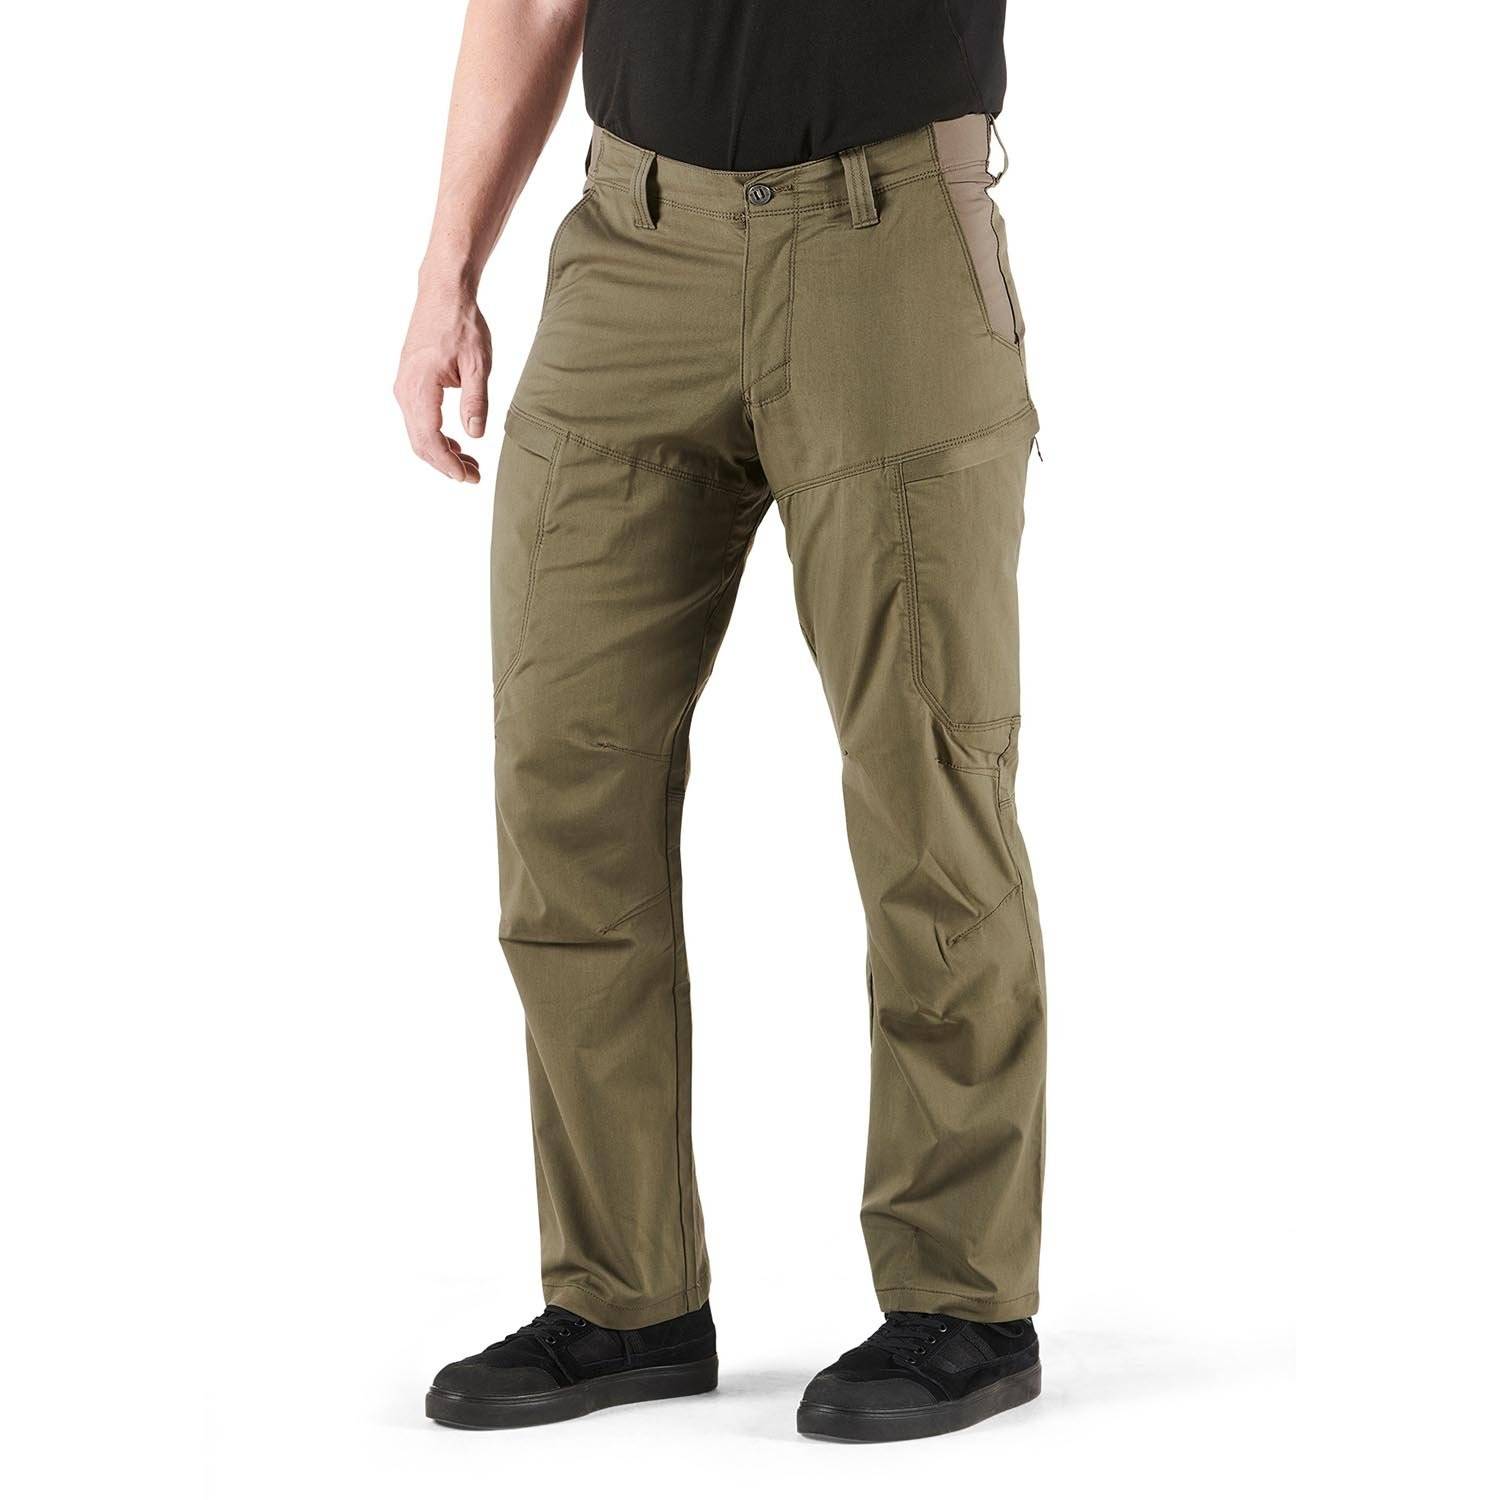 5.11 Tactical Apex Pants